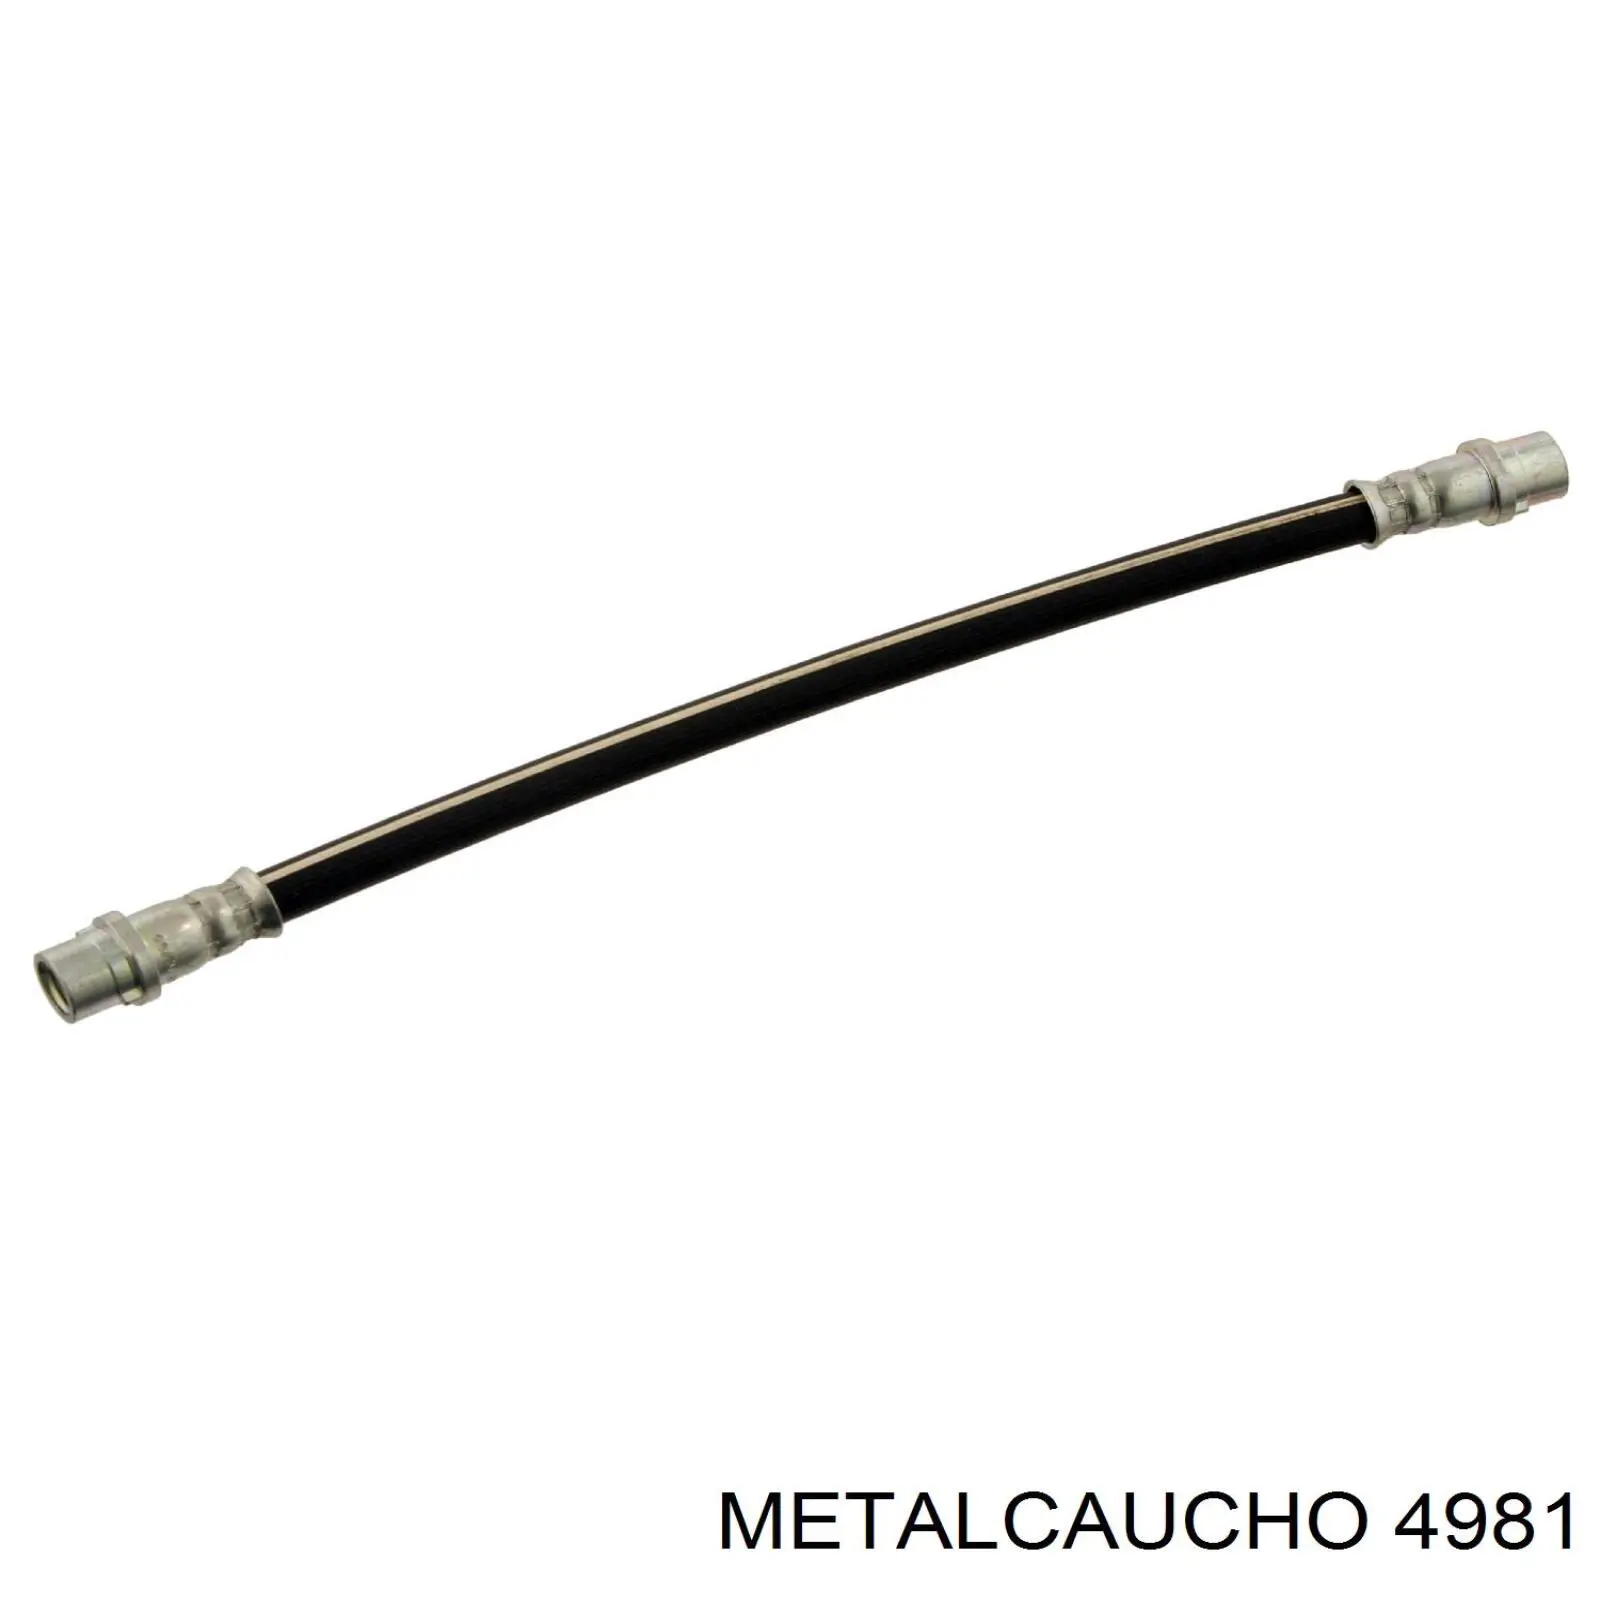 4981 Metalcaucho soporte de estabilizador delantero exterior